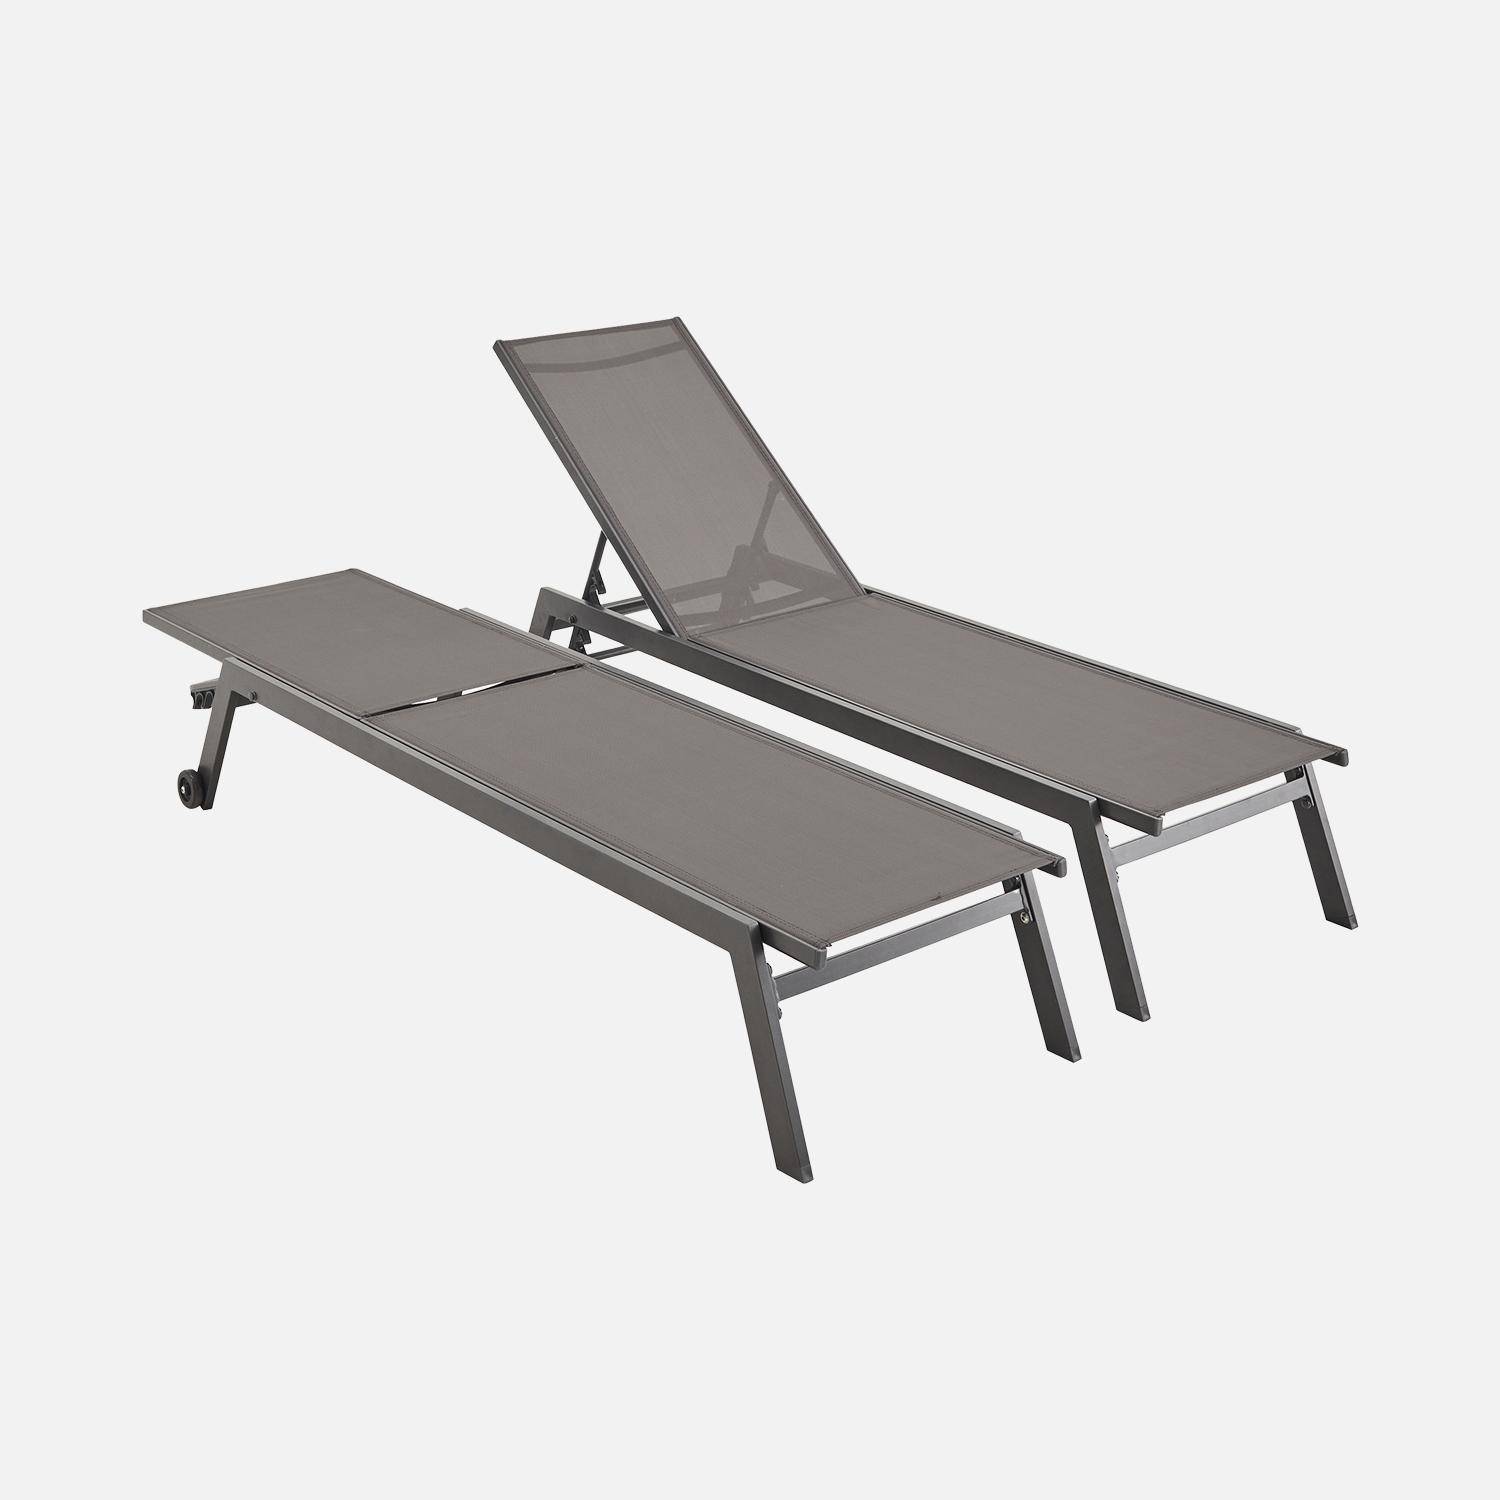 Set mit 2 ELSA Sonnenliegen aus grauem Aluminium und dunkelgrauem Textilene, Liegestühle mit mehreren Positionen und Rädern,sweeek,Photo2